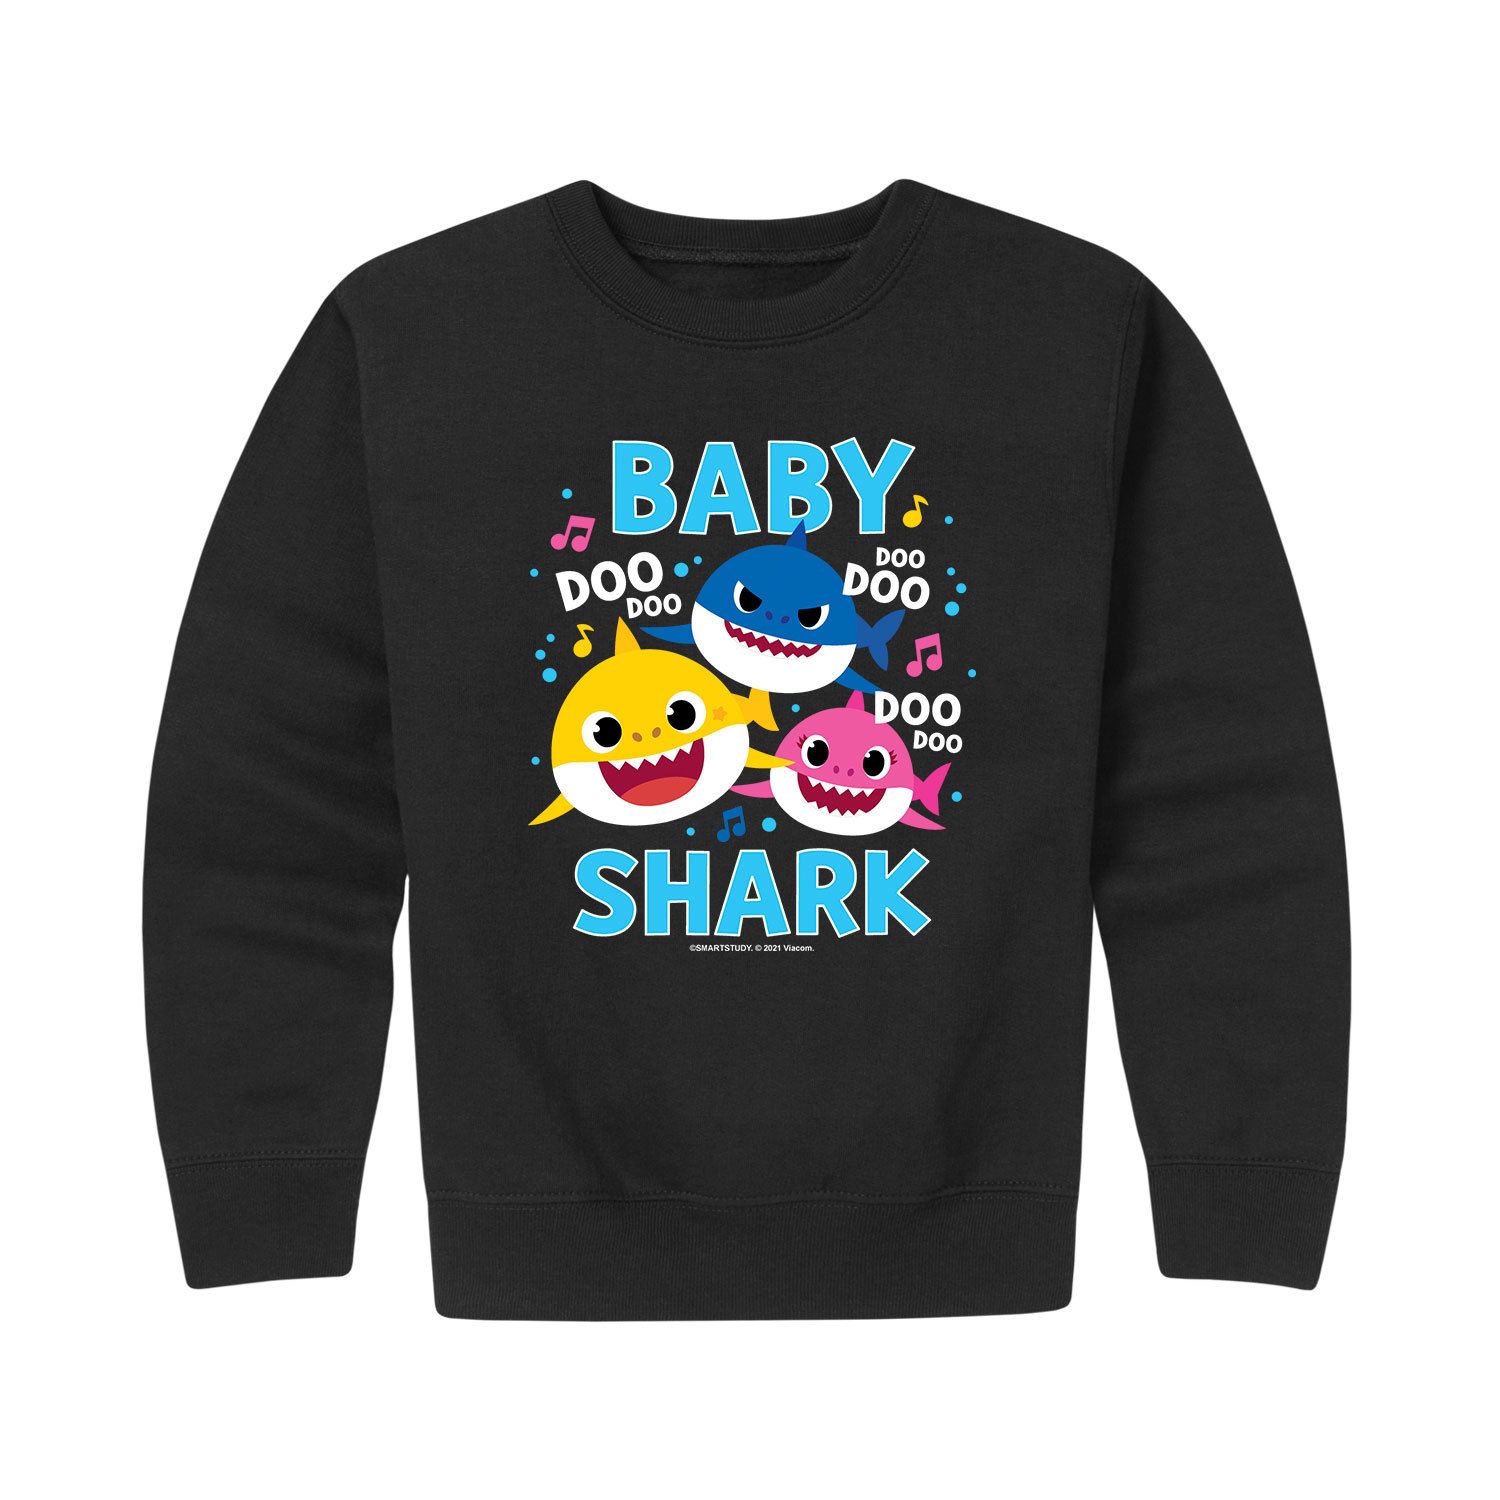 Флисовый свитшот с рисунком Doo Doo для мальчиков 8–20 лет Baby Shark Family Doo Doo Licensed Character